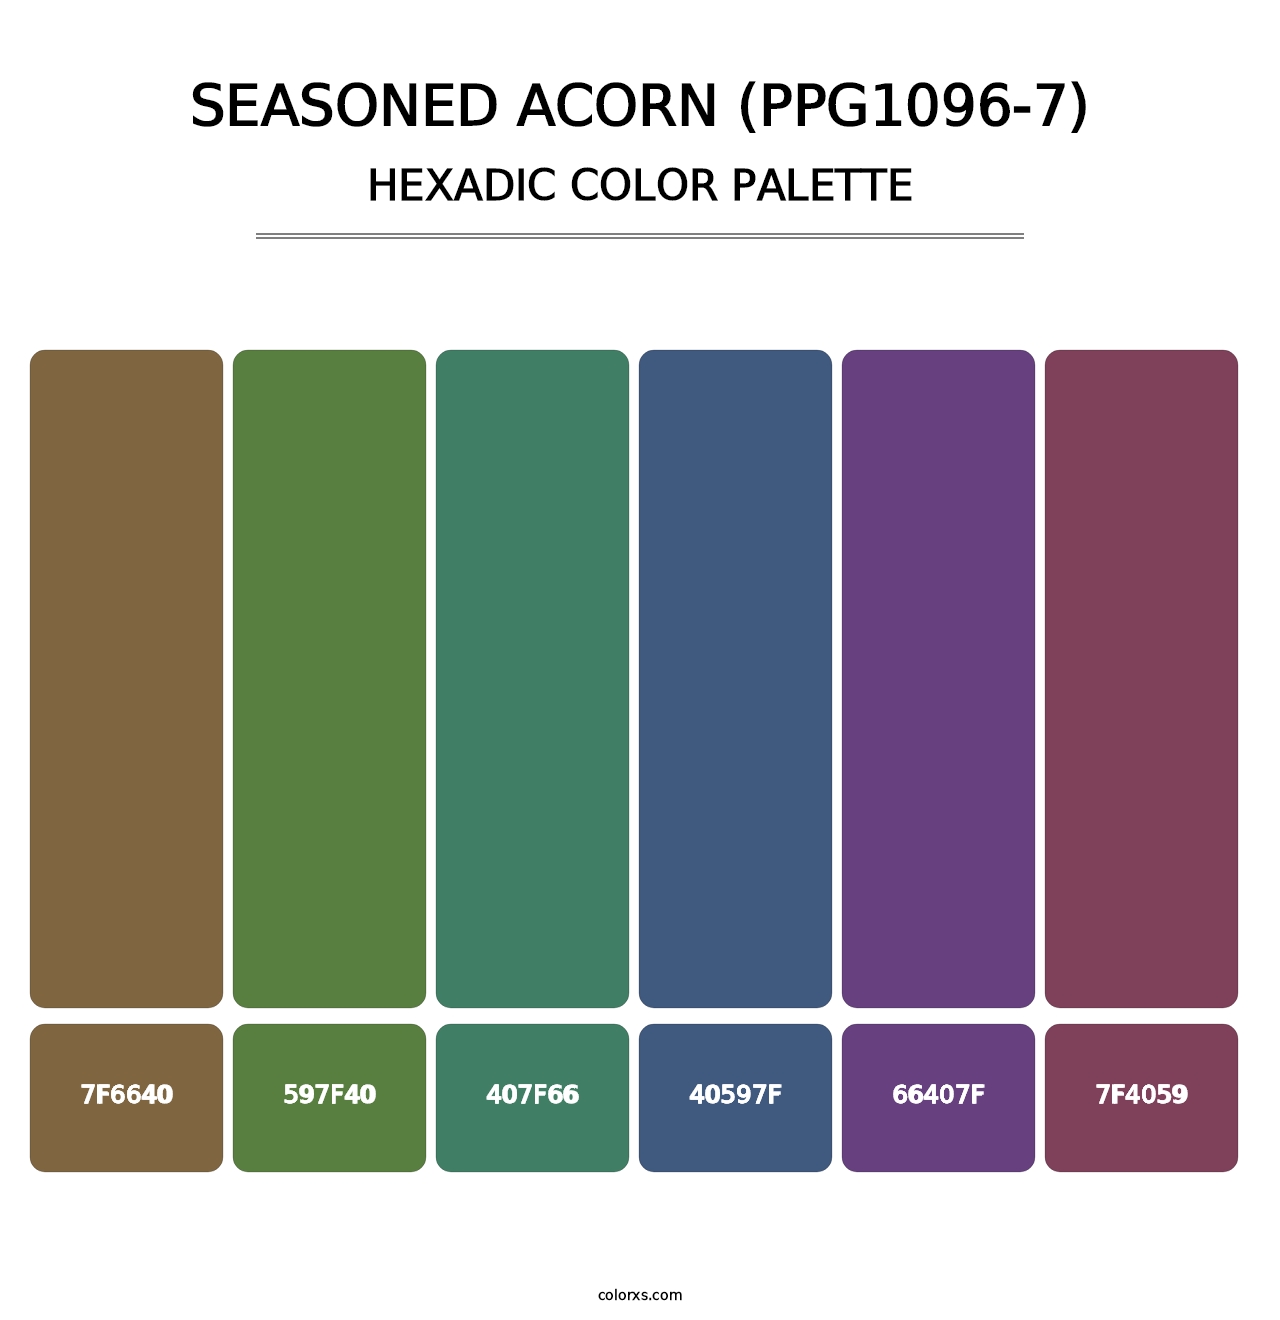 Seasoned Acorn (PPG1096-7) - Hexadic Color Palette